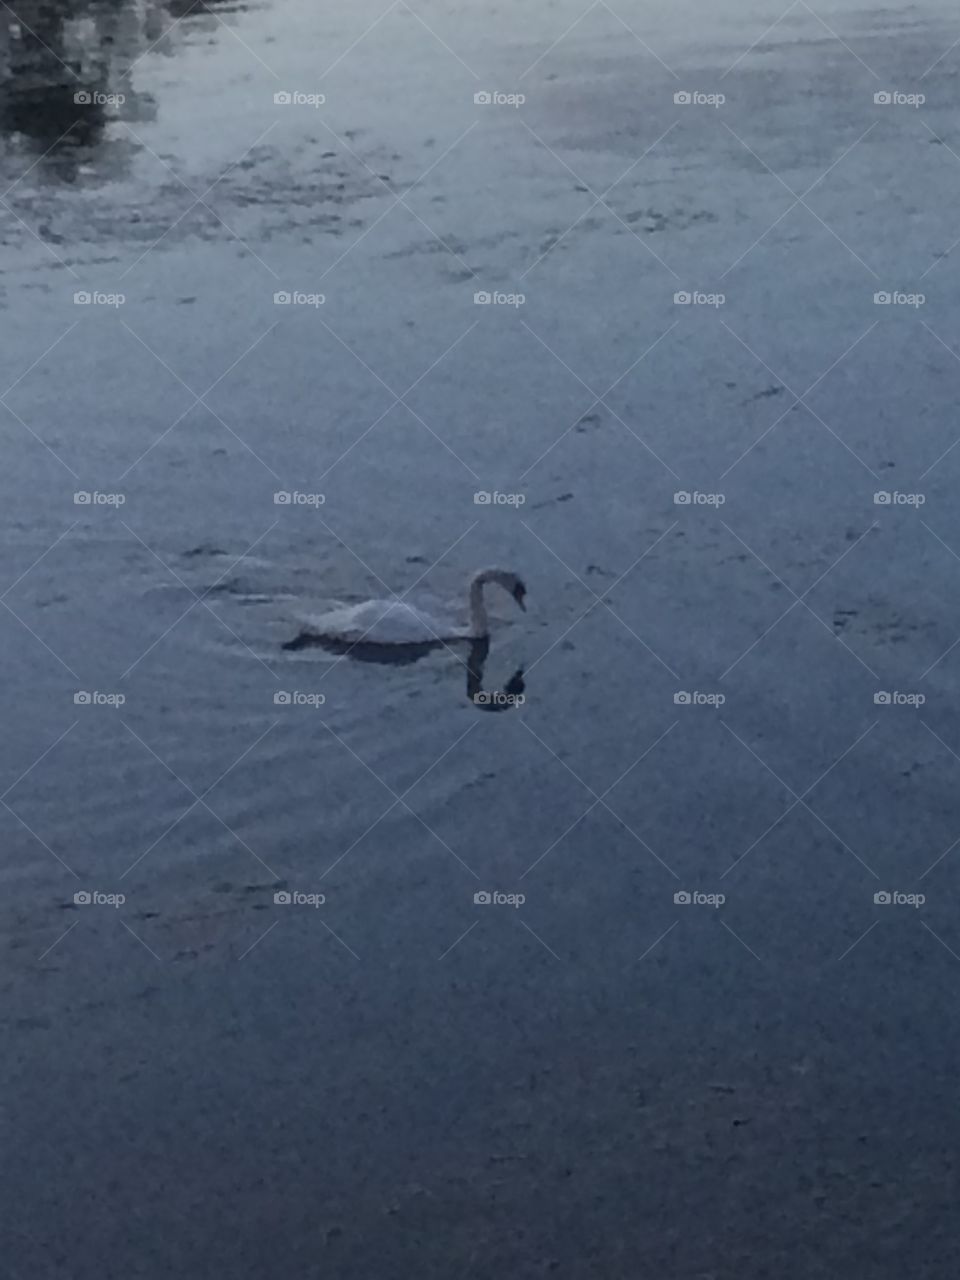 Swan in water 